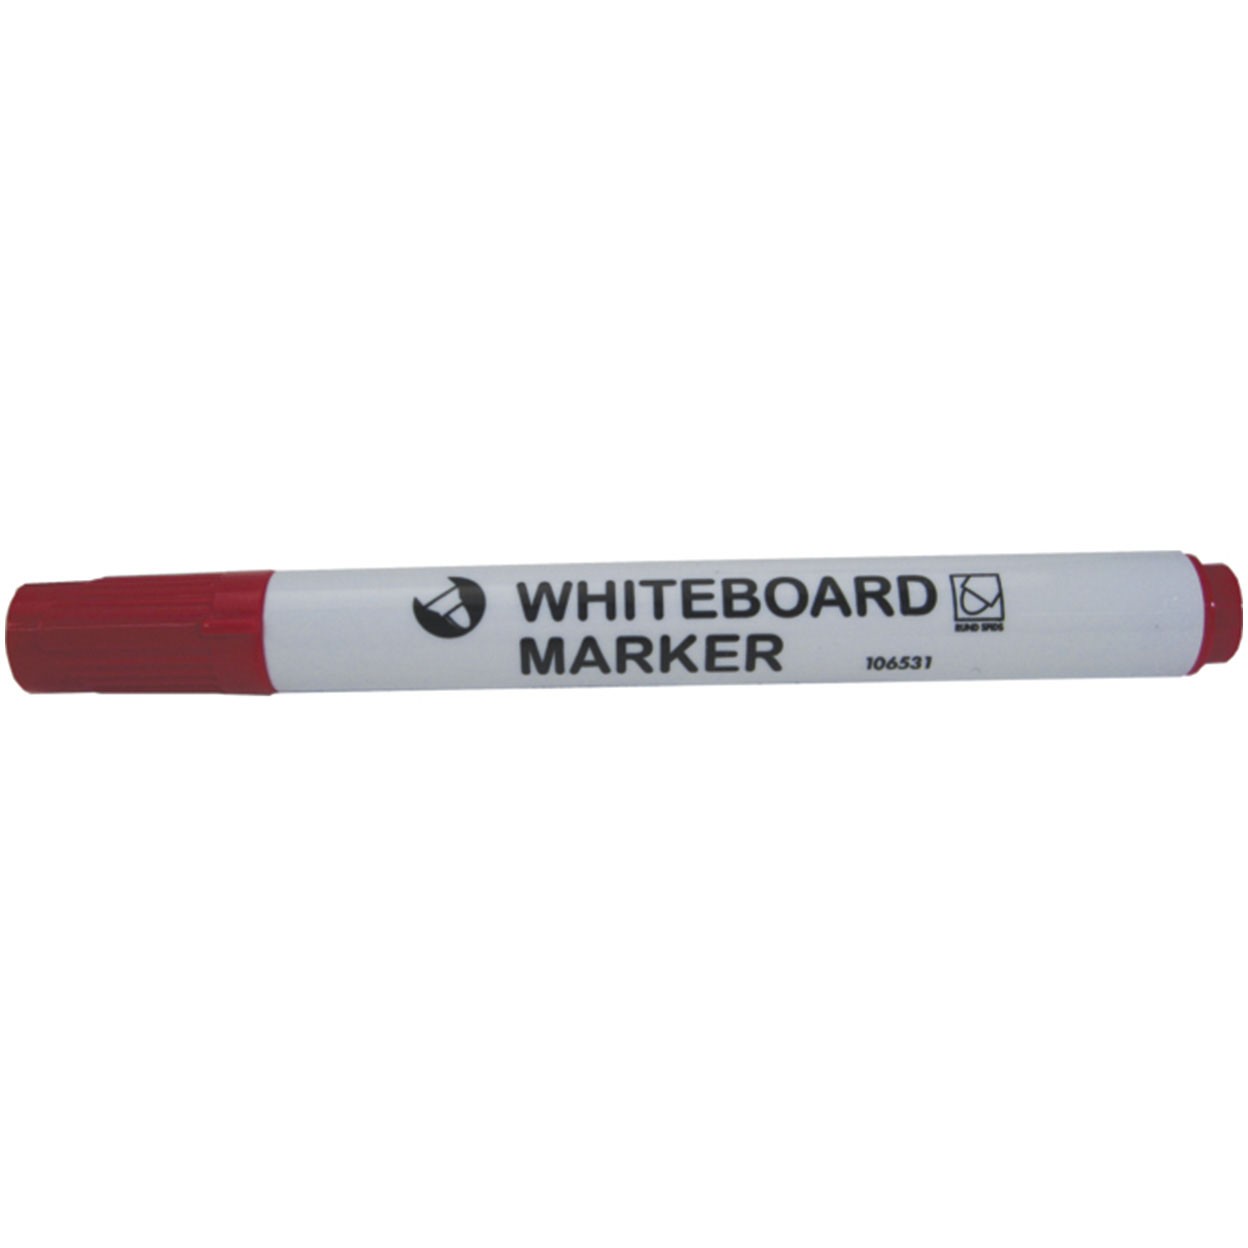 NOA whiteboardmarker med stregbredde 3 mm i farven rød